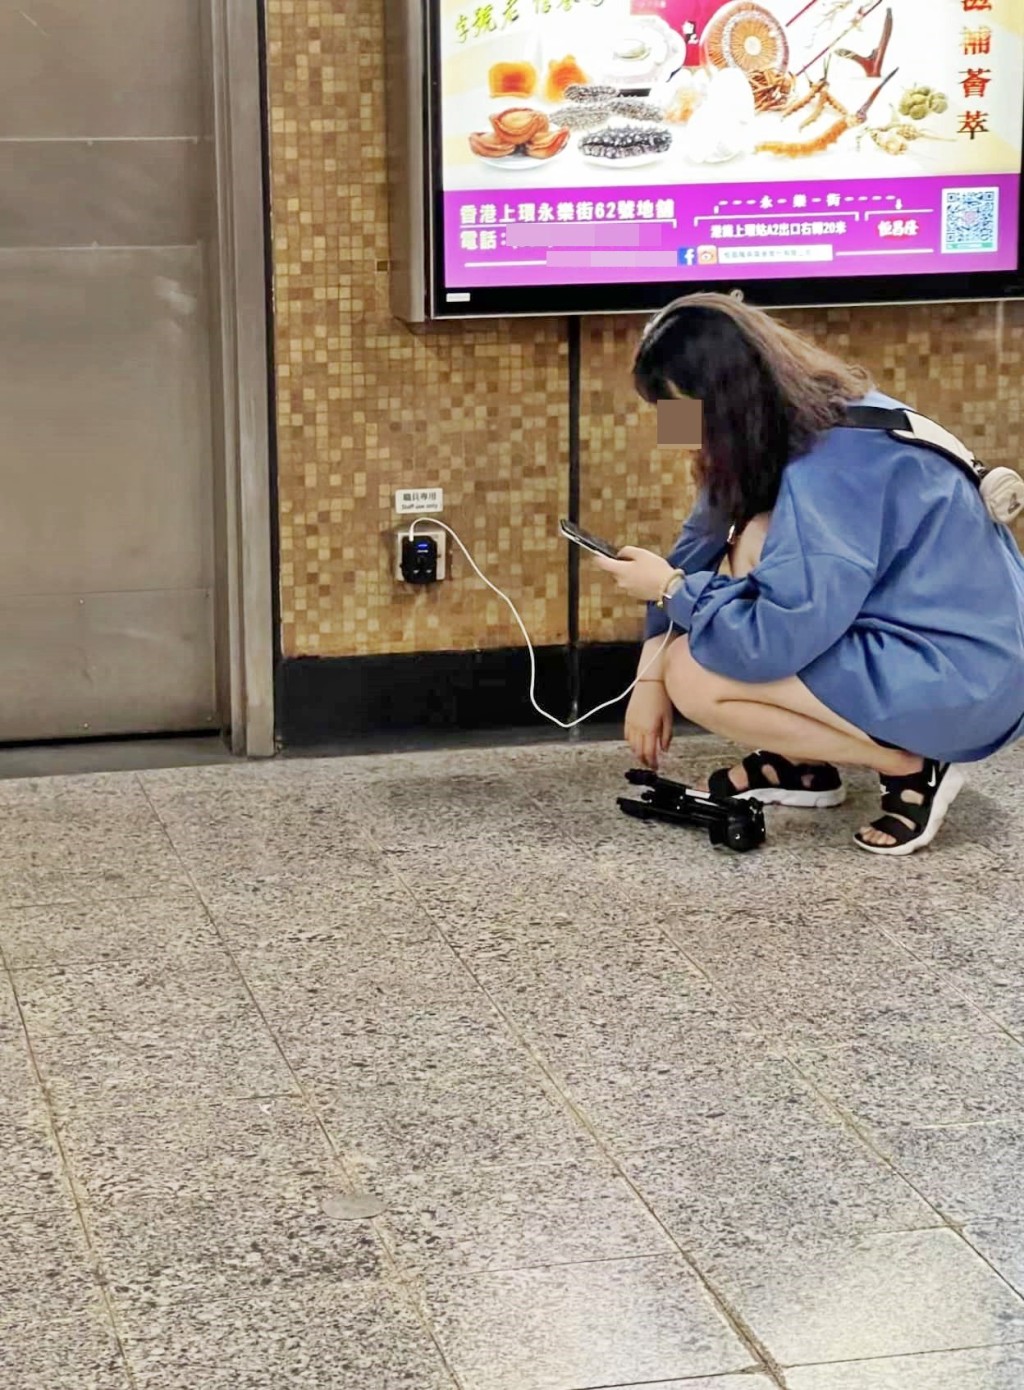 女子在叉电期间，蹲在地上全神贯注滑手机，并将随身携带的脚架放于地上。网图